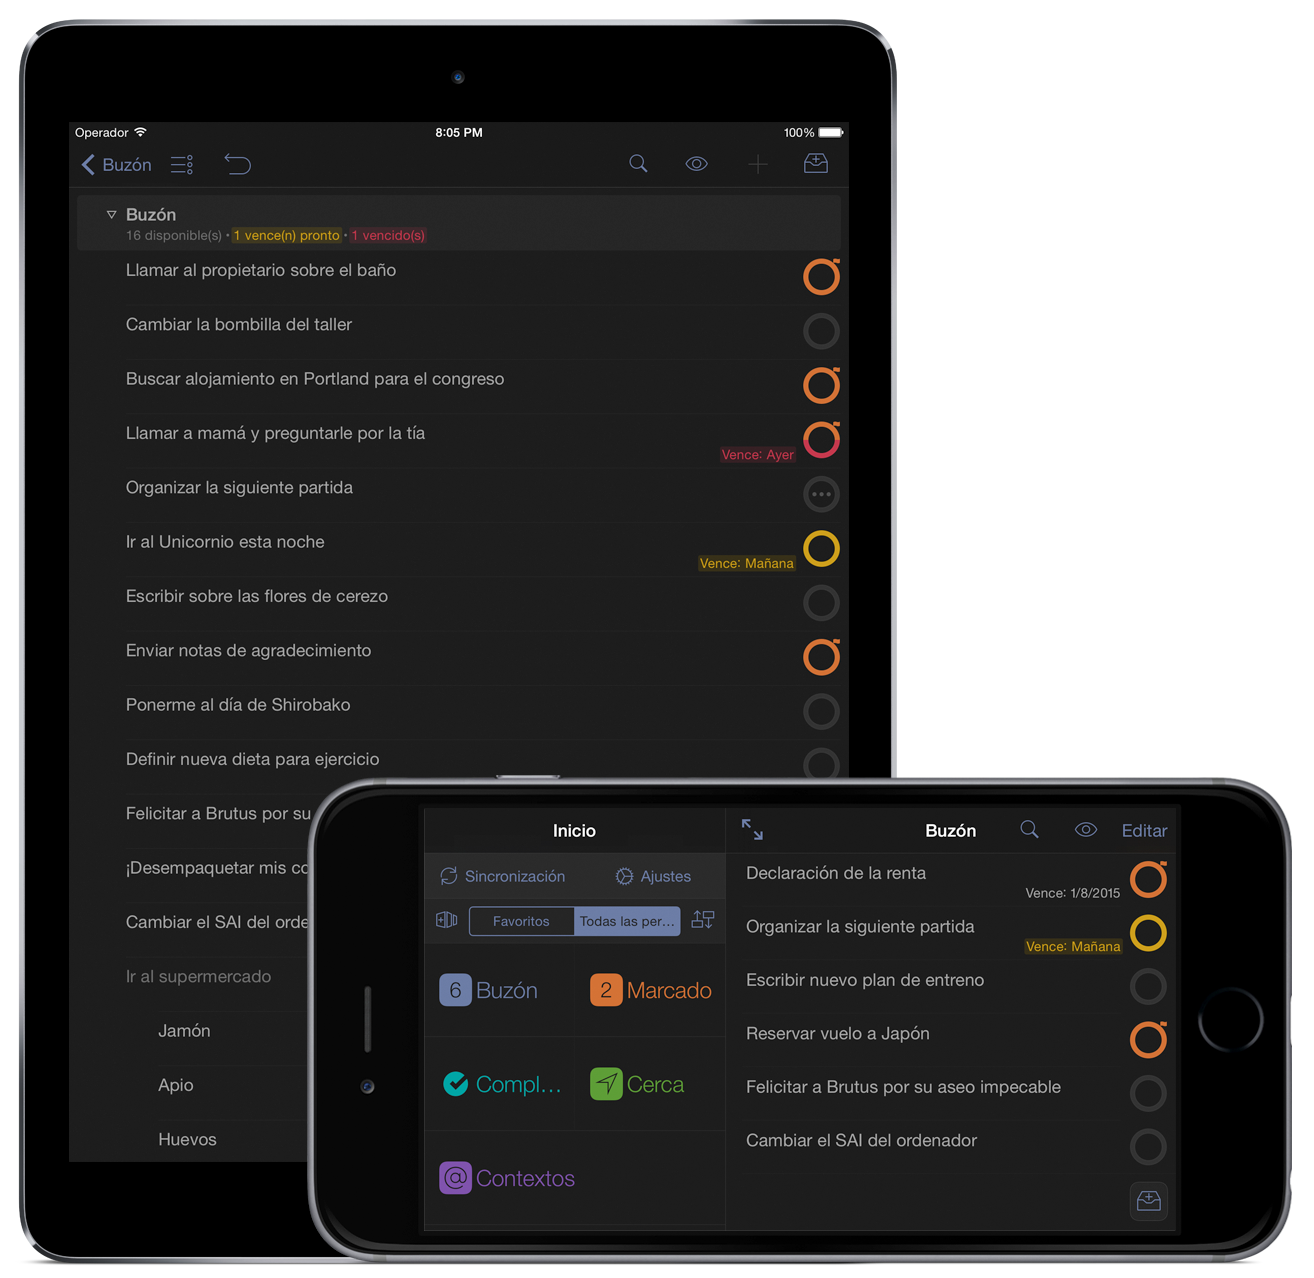 OmniFocus 2 para iOS en orientación horizontal en iPhone 6 Plus y en orientación vertical en iPad Air 2, mostrando el modo de paleta oscura.